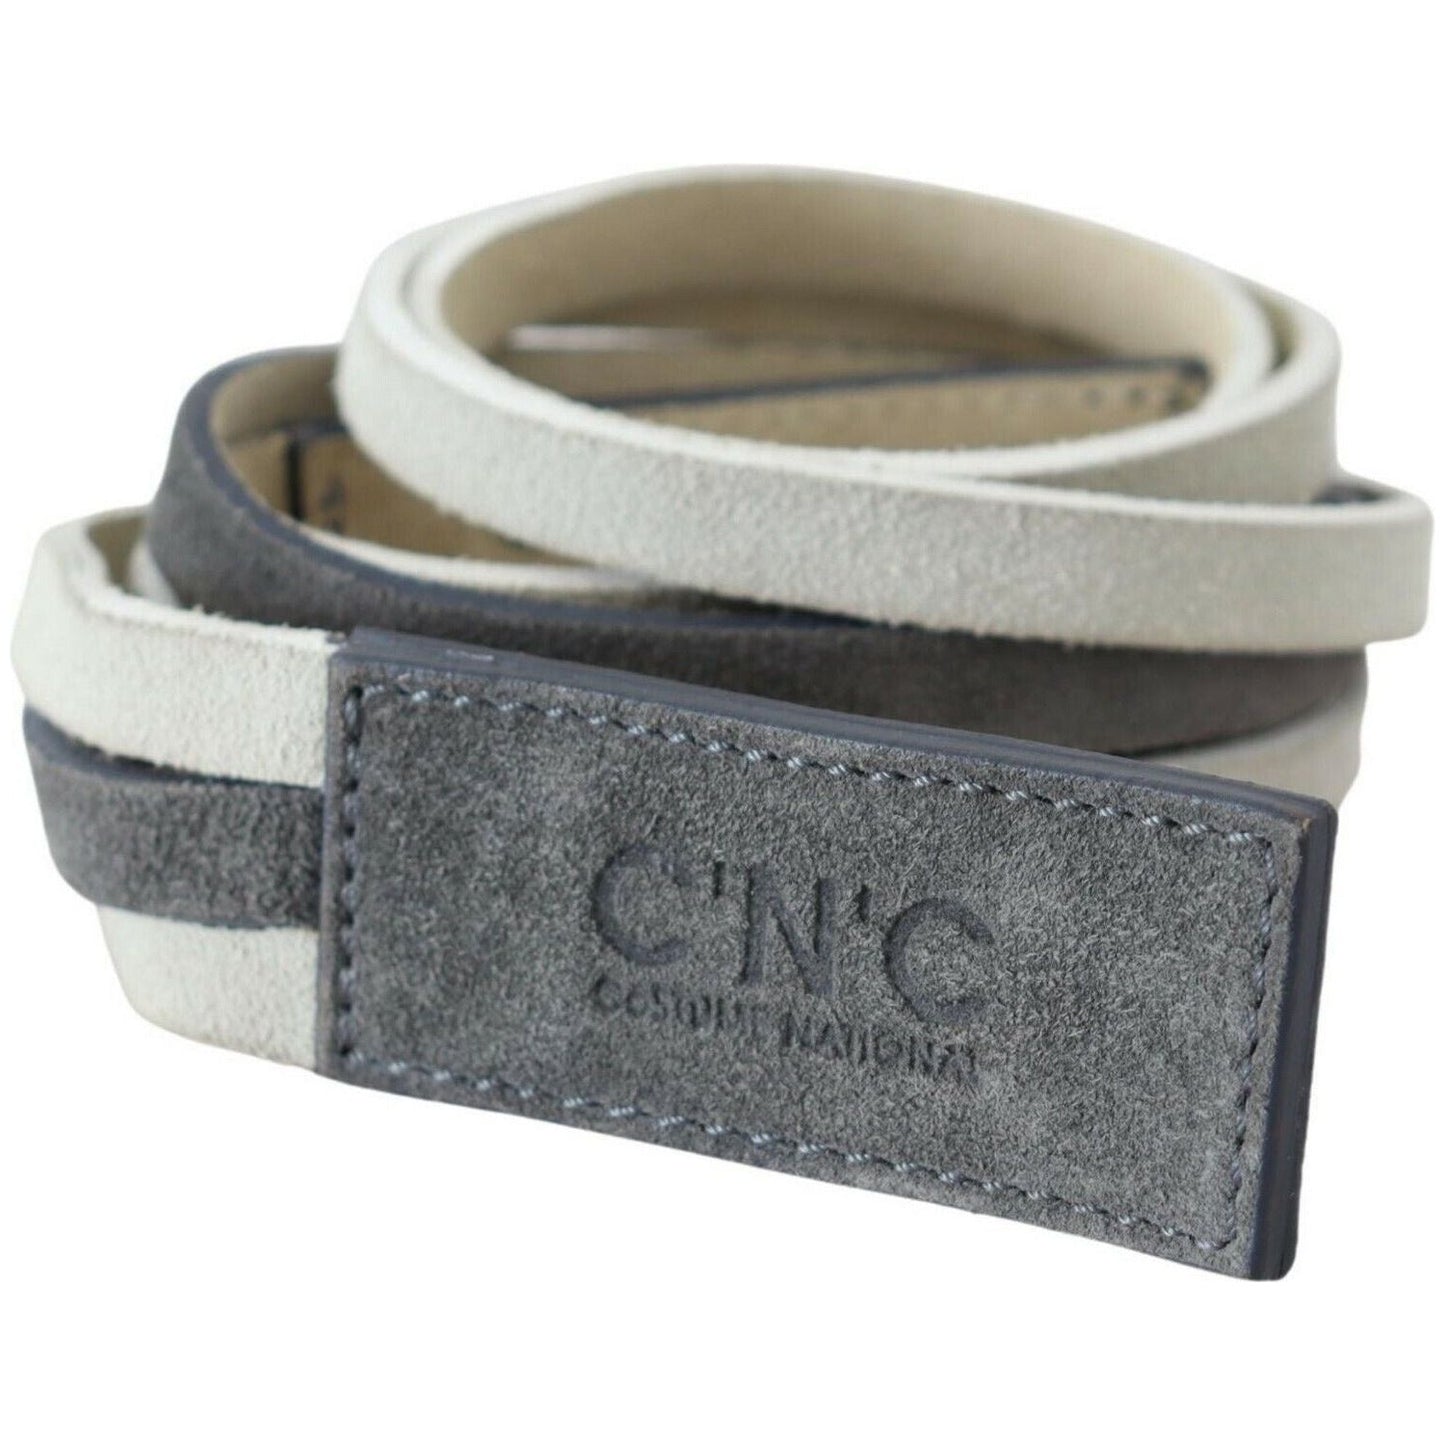 Costume National Chic White Leather Logo Belt WOMAN BELTS white-velvet-square-logo-design-waist-belt